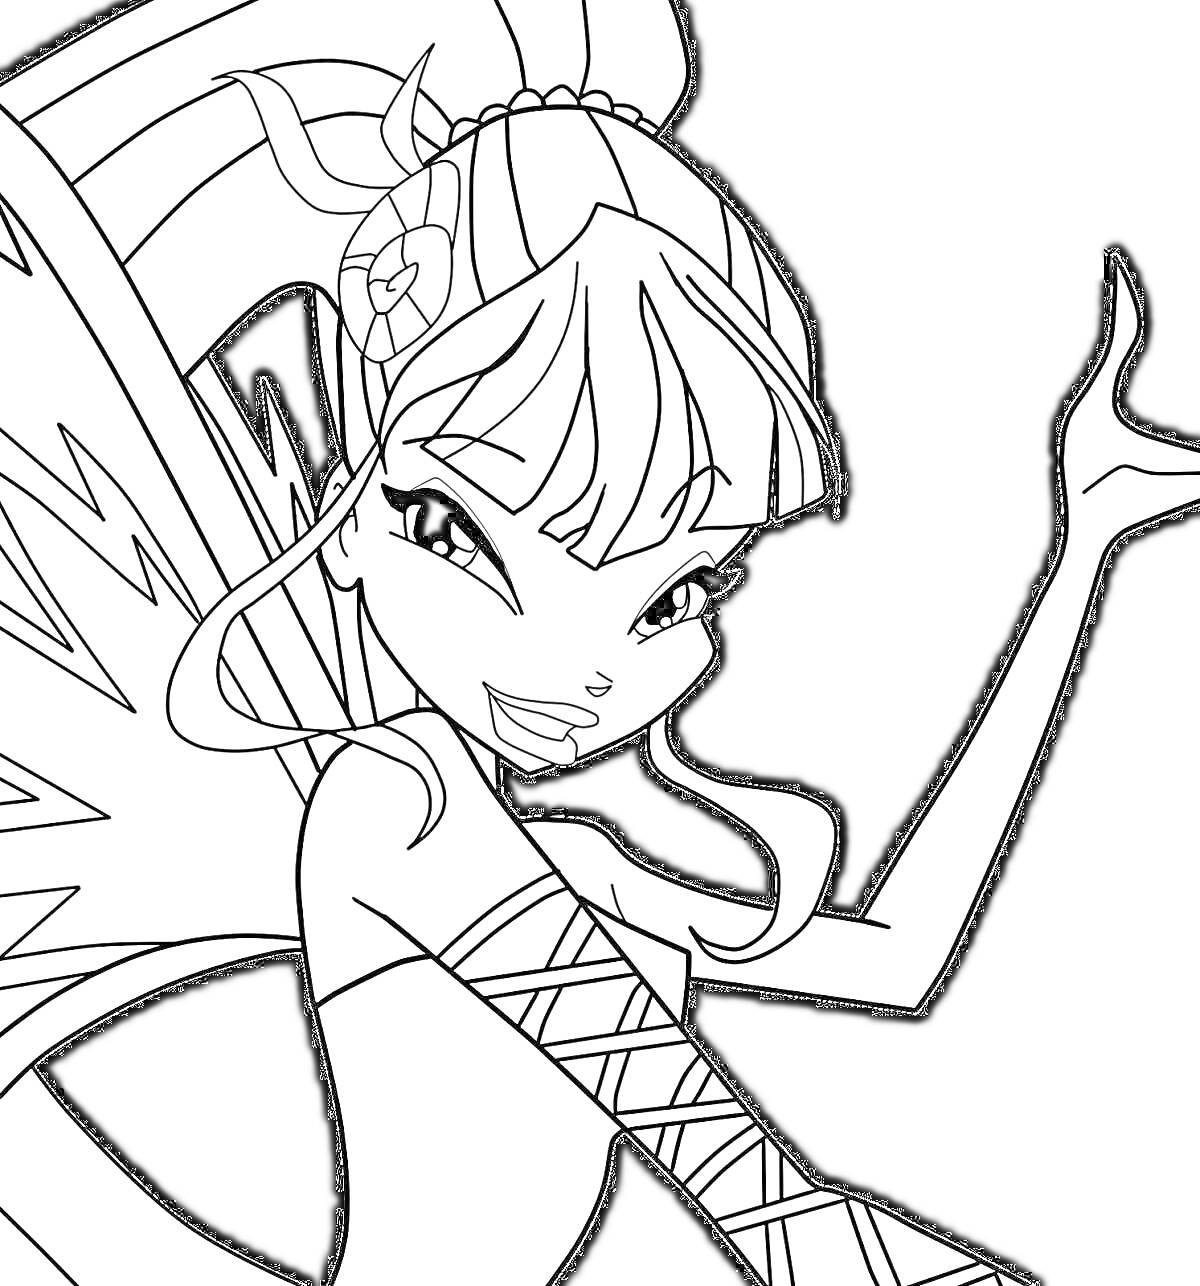 Раскраска Девушка-фея с длинными волосами, крыльями и плетеными элементами на одежде